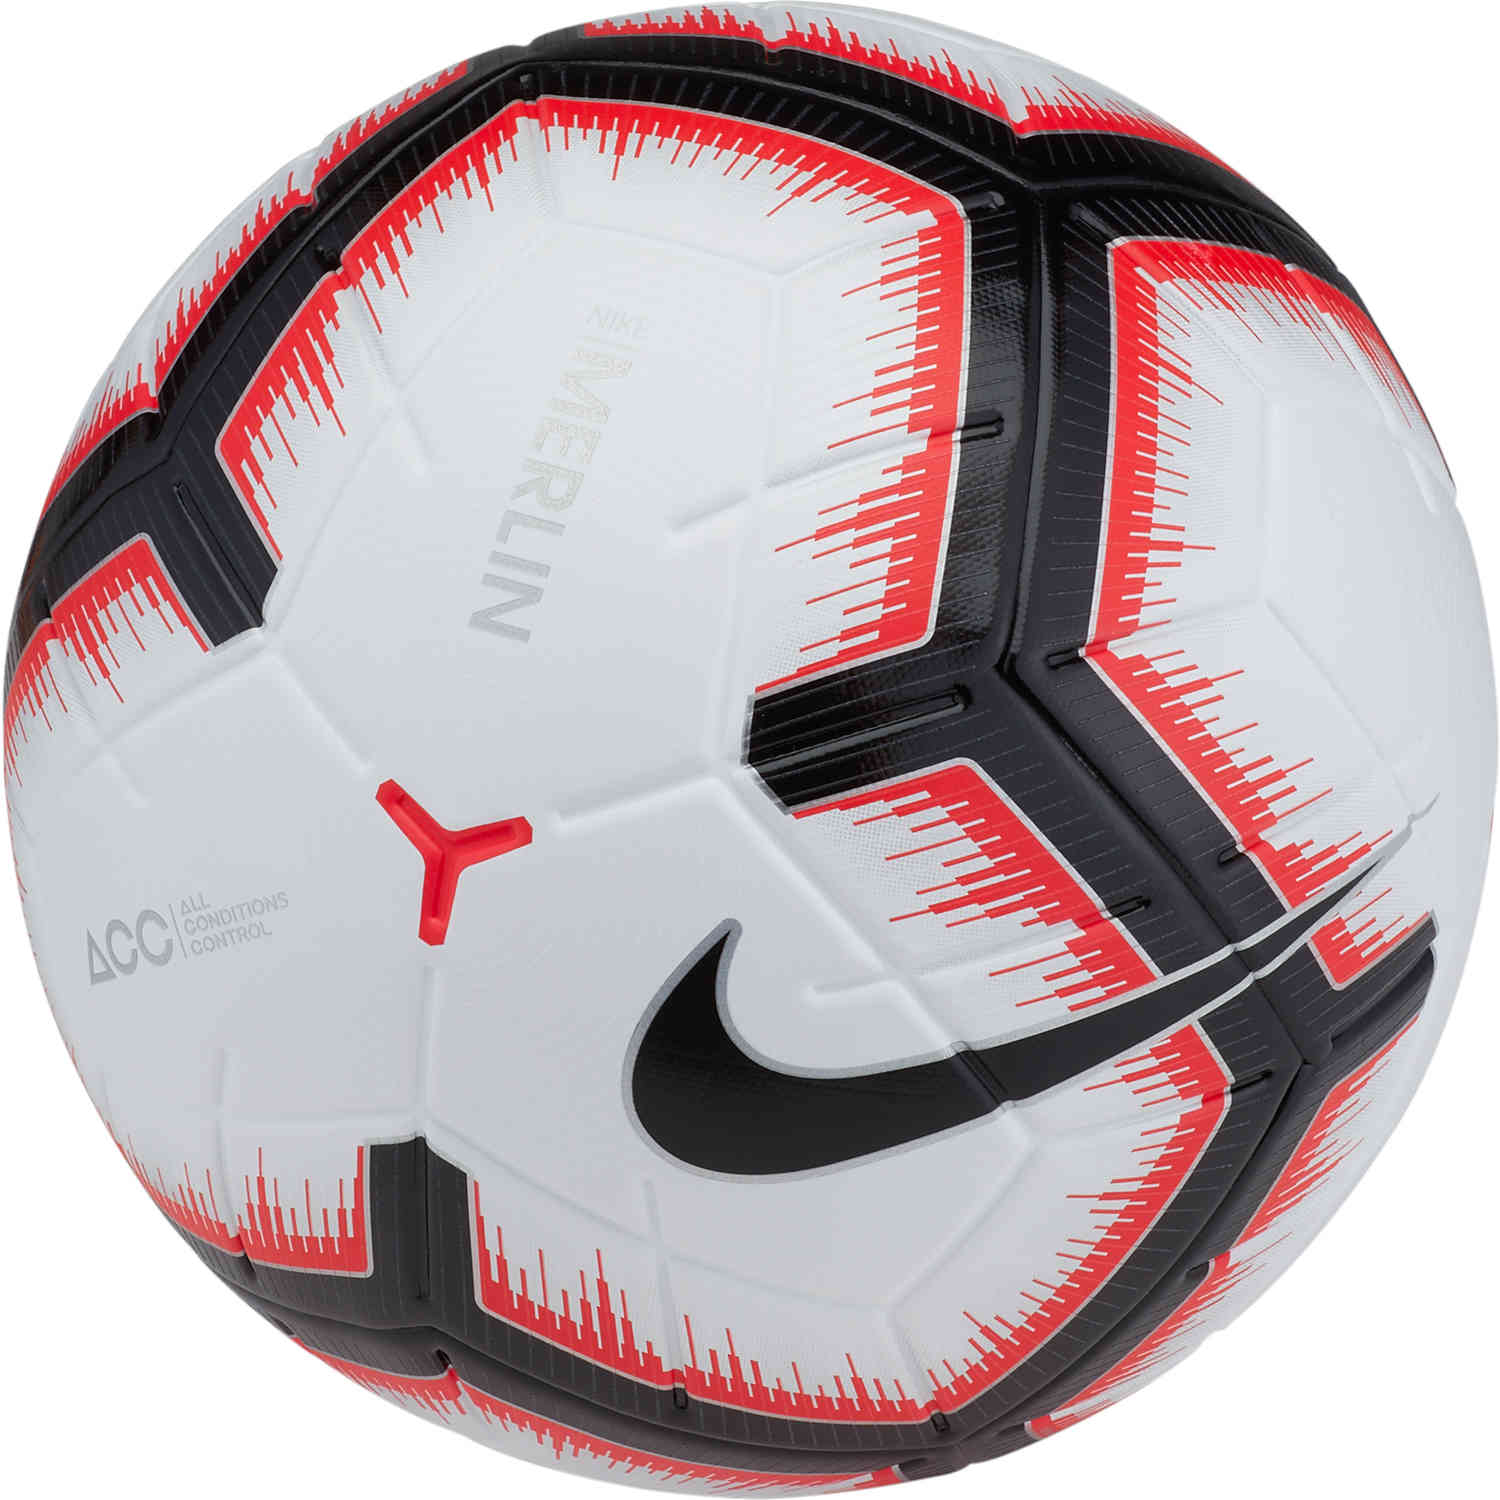 merlin soccer ball